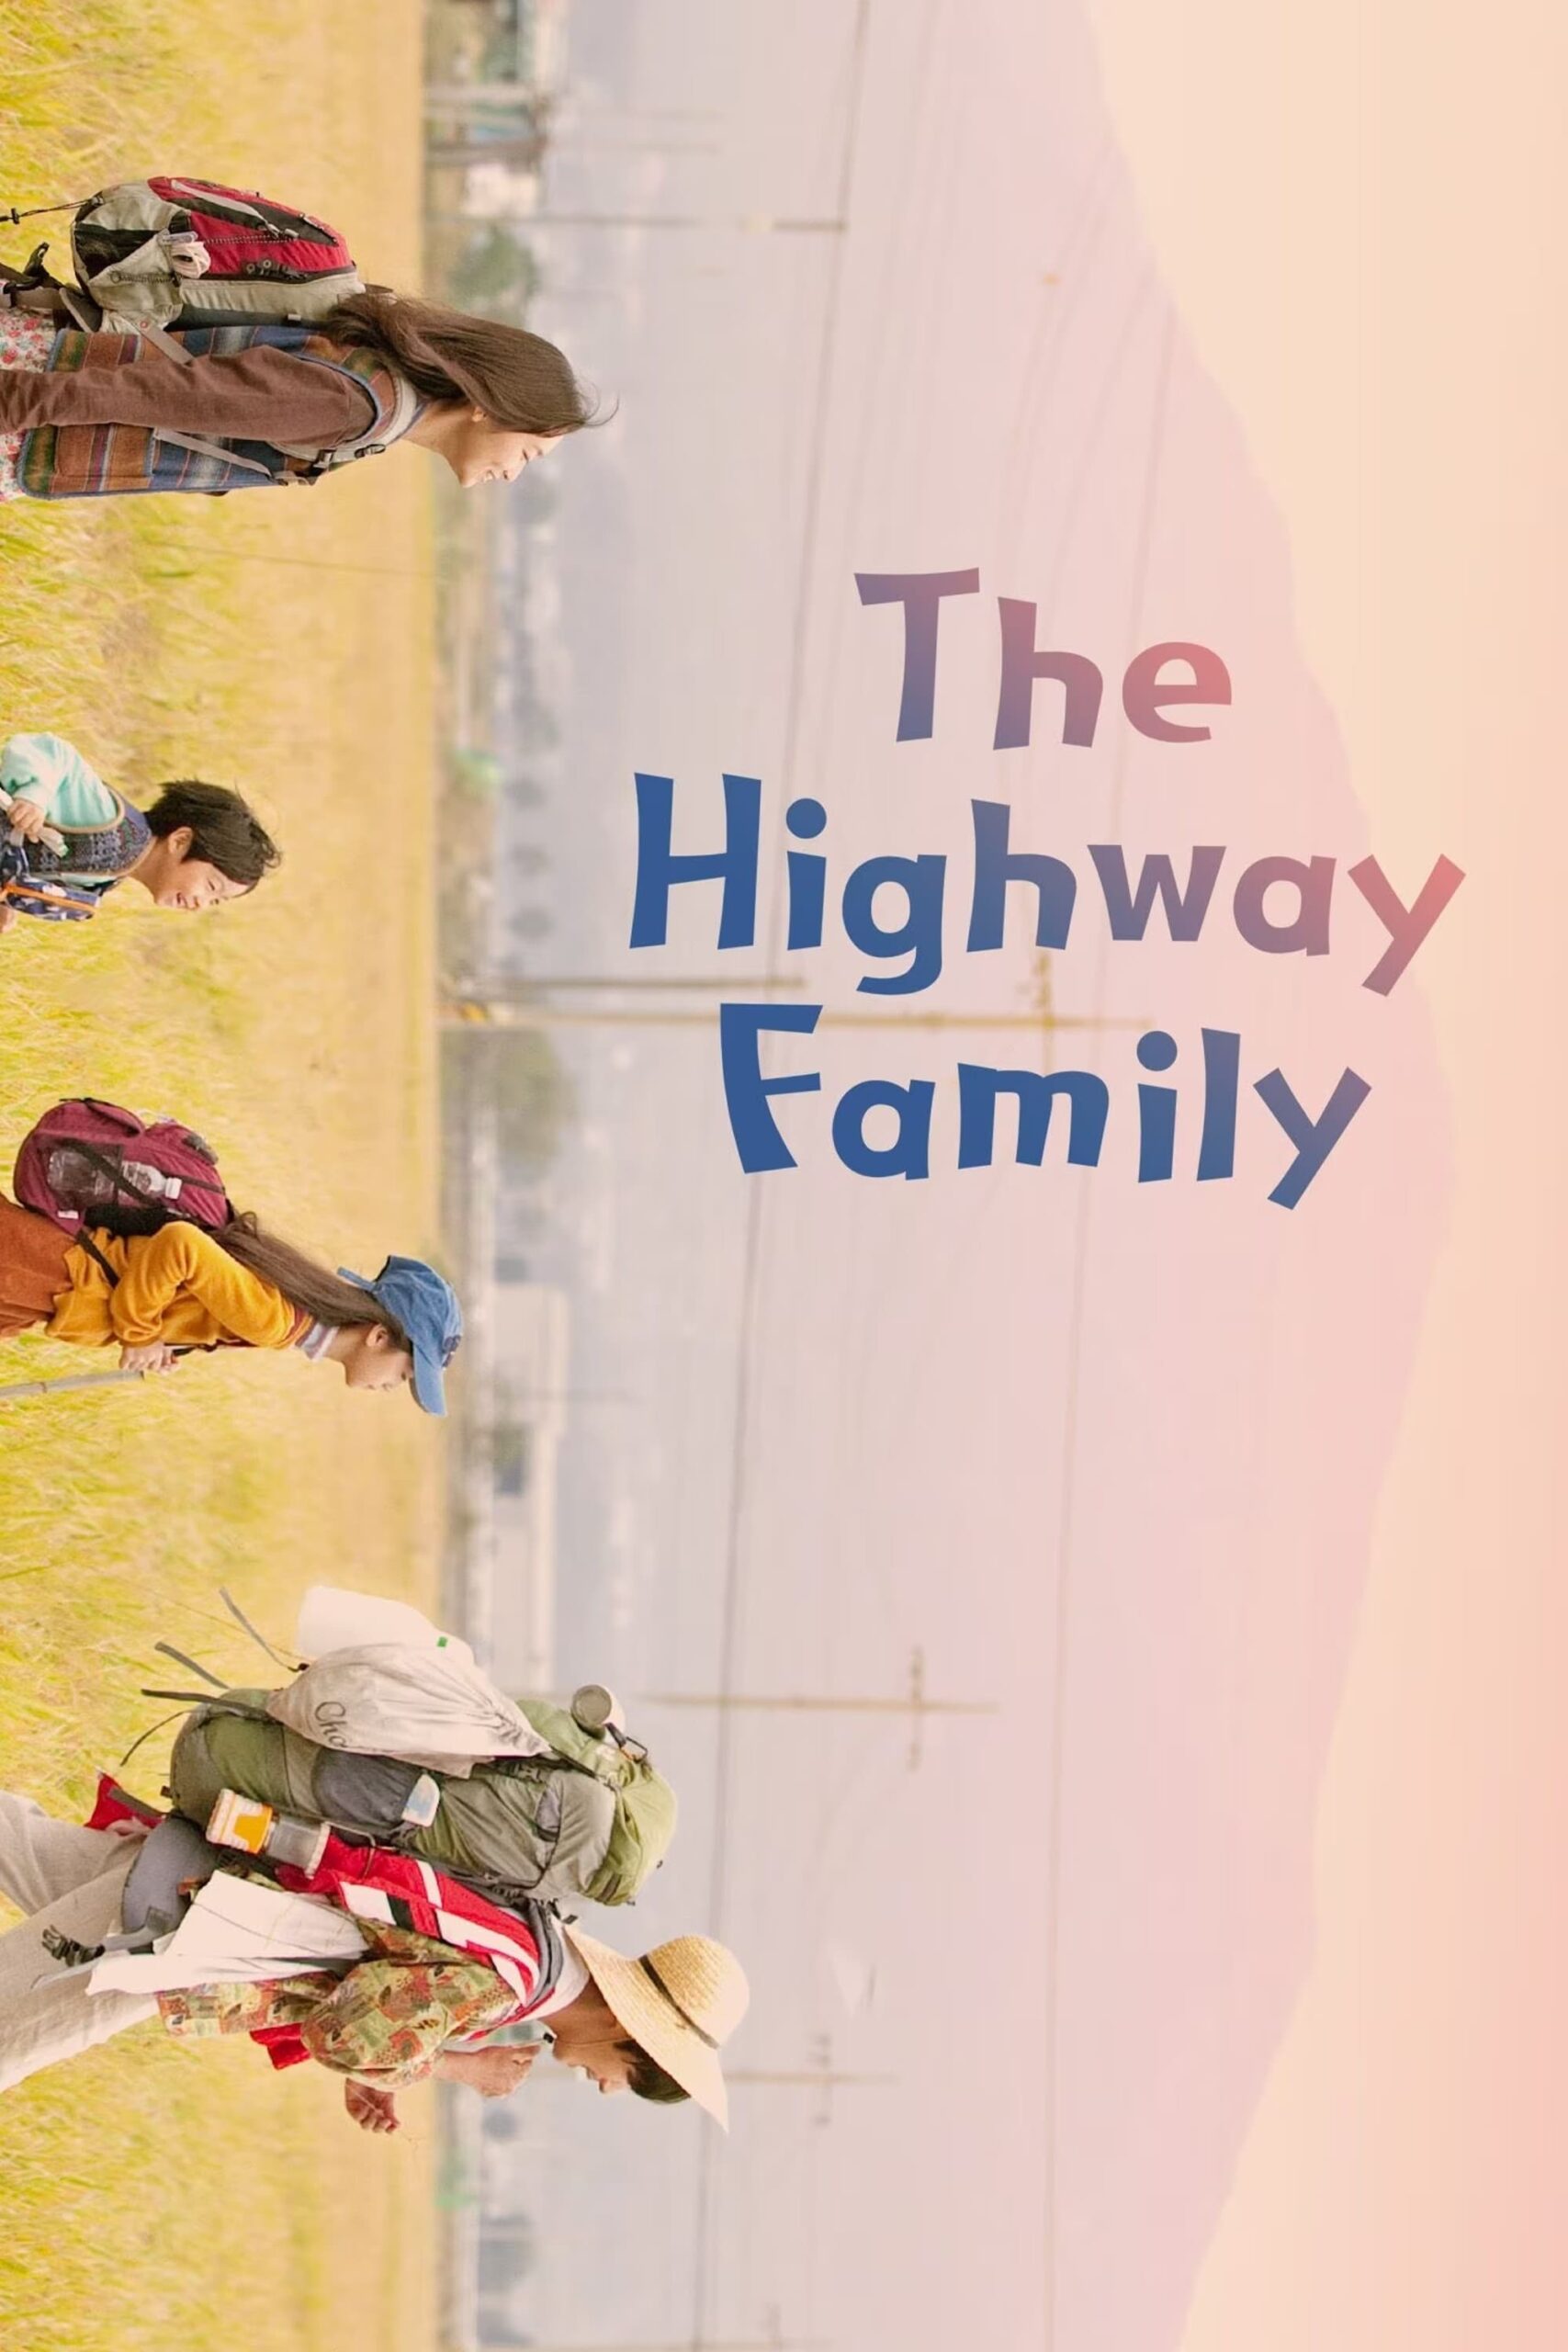 خانواده بزرگراه (The Highway Family)